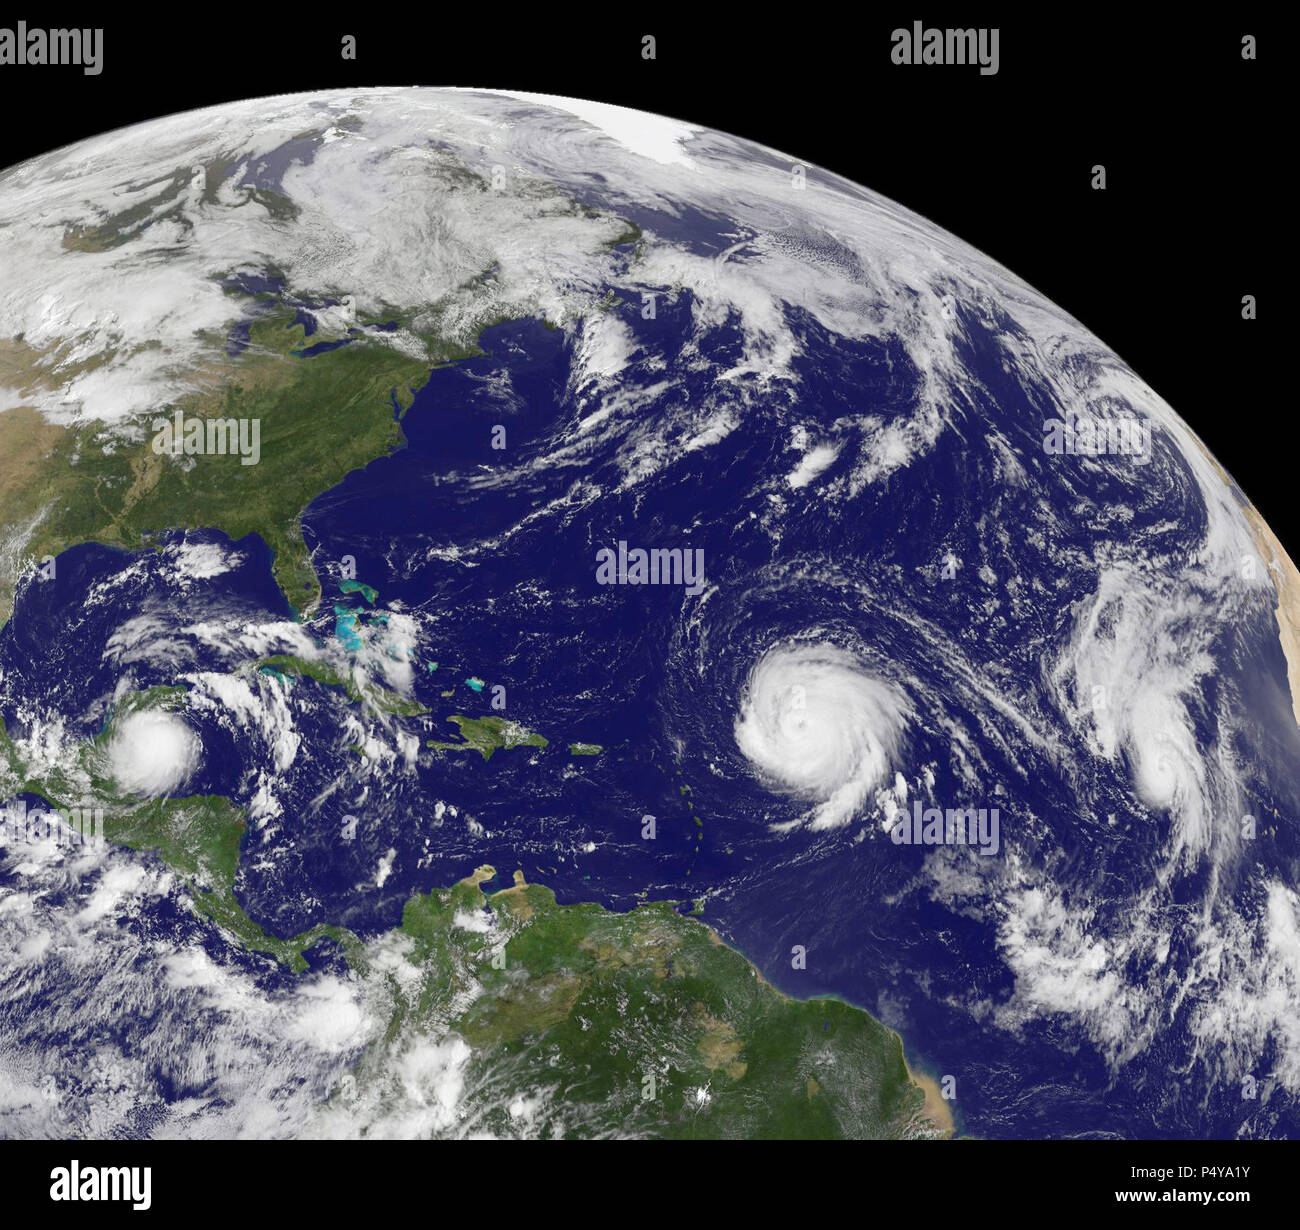 Tropischer Sturm Karl, Hurrikane Igor und Julia-on Sept. 15, 2010 drei tropische Wirbelstürme aktiv waren, in den Atlantischen Ozean Becken, zwei von Ihnen leistungsstarke Kategorie vier Hurrikane auf der Saffir-Simpson-Skala. Stockfoto